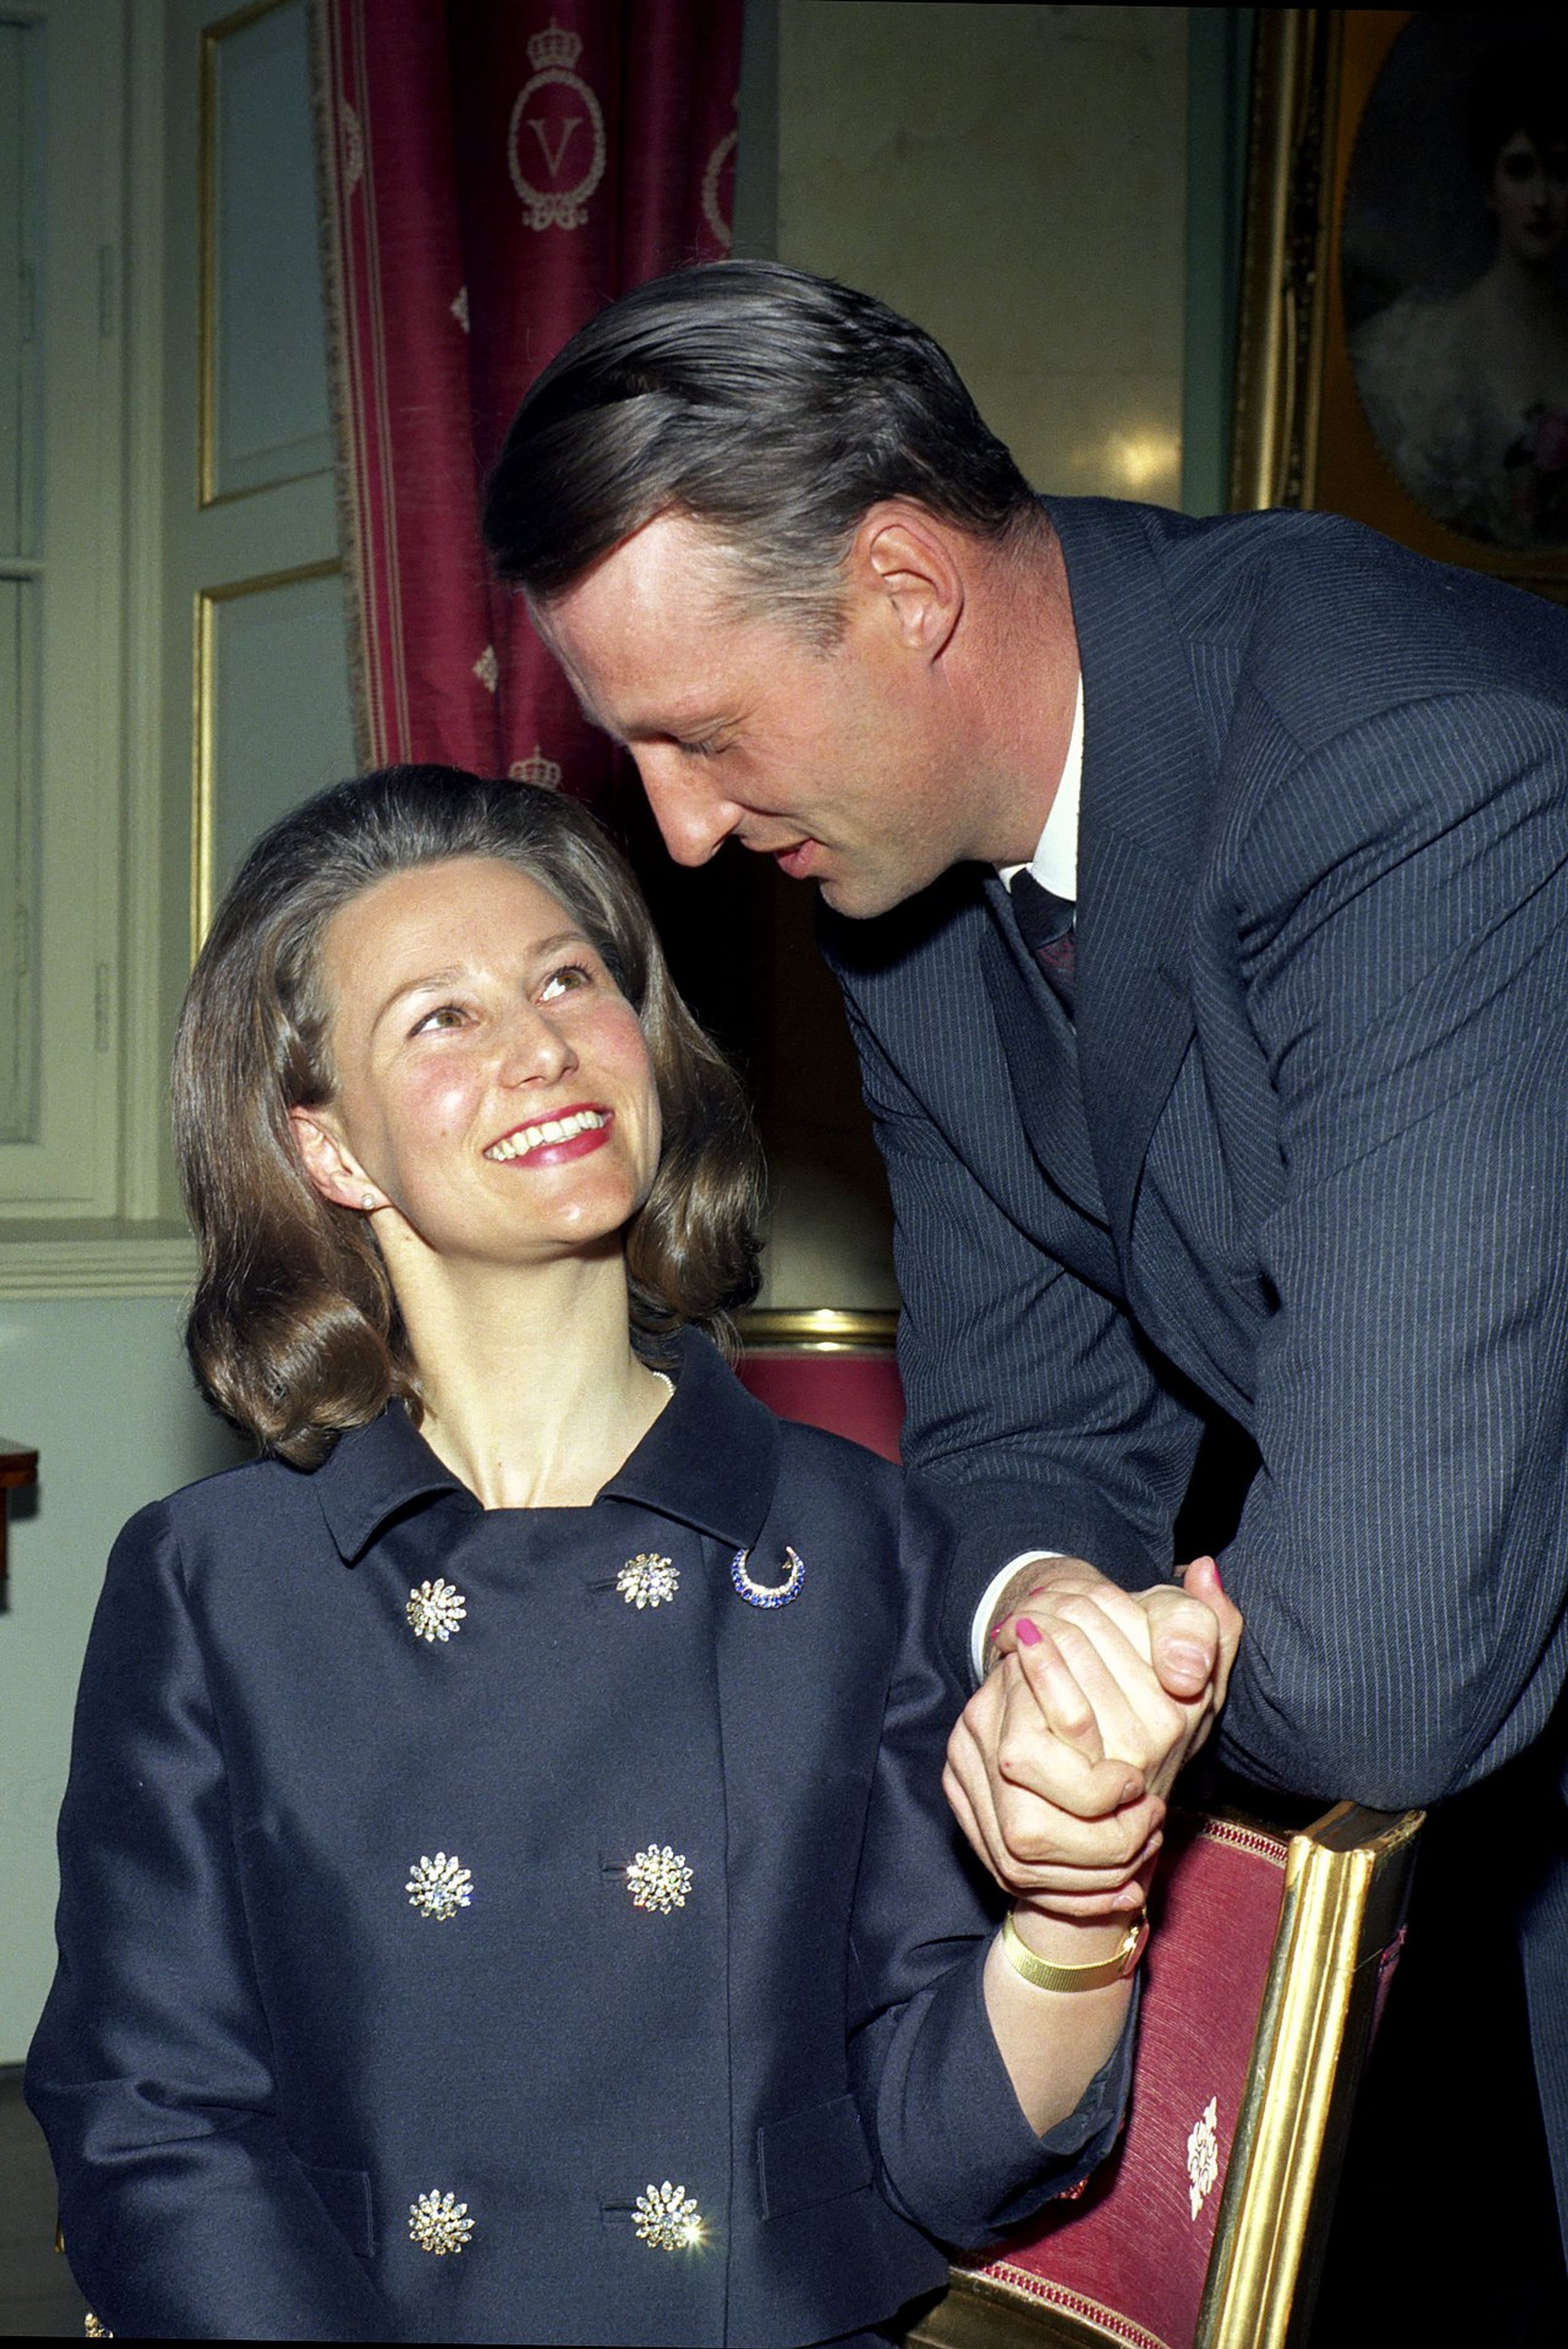 Maart 1968: Toenmalig kroonprins Harald en zijn verloofde Sonja Haraldsen poseren voor fotografen na